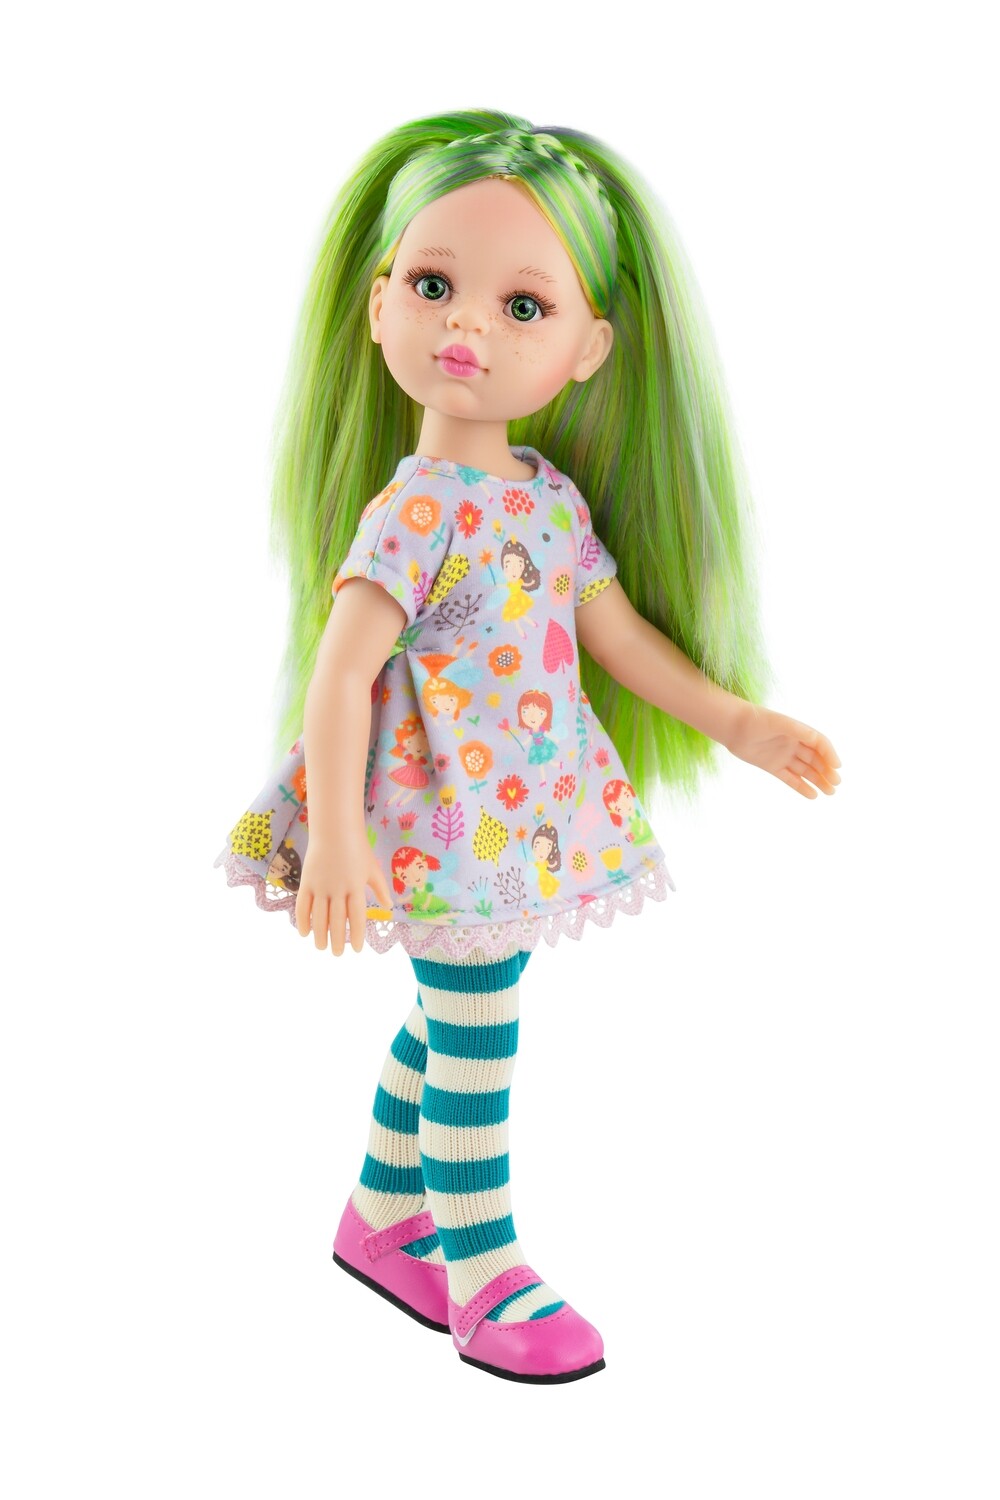 Кукла Сорайа, Paola Reina Паола Рейна (в фабричном наряде), 34 см